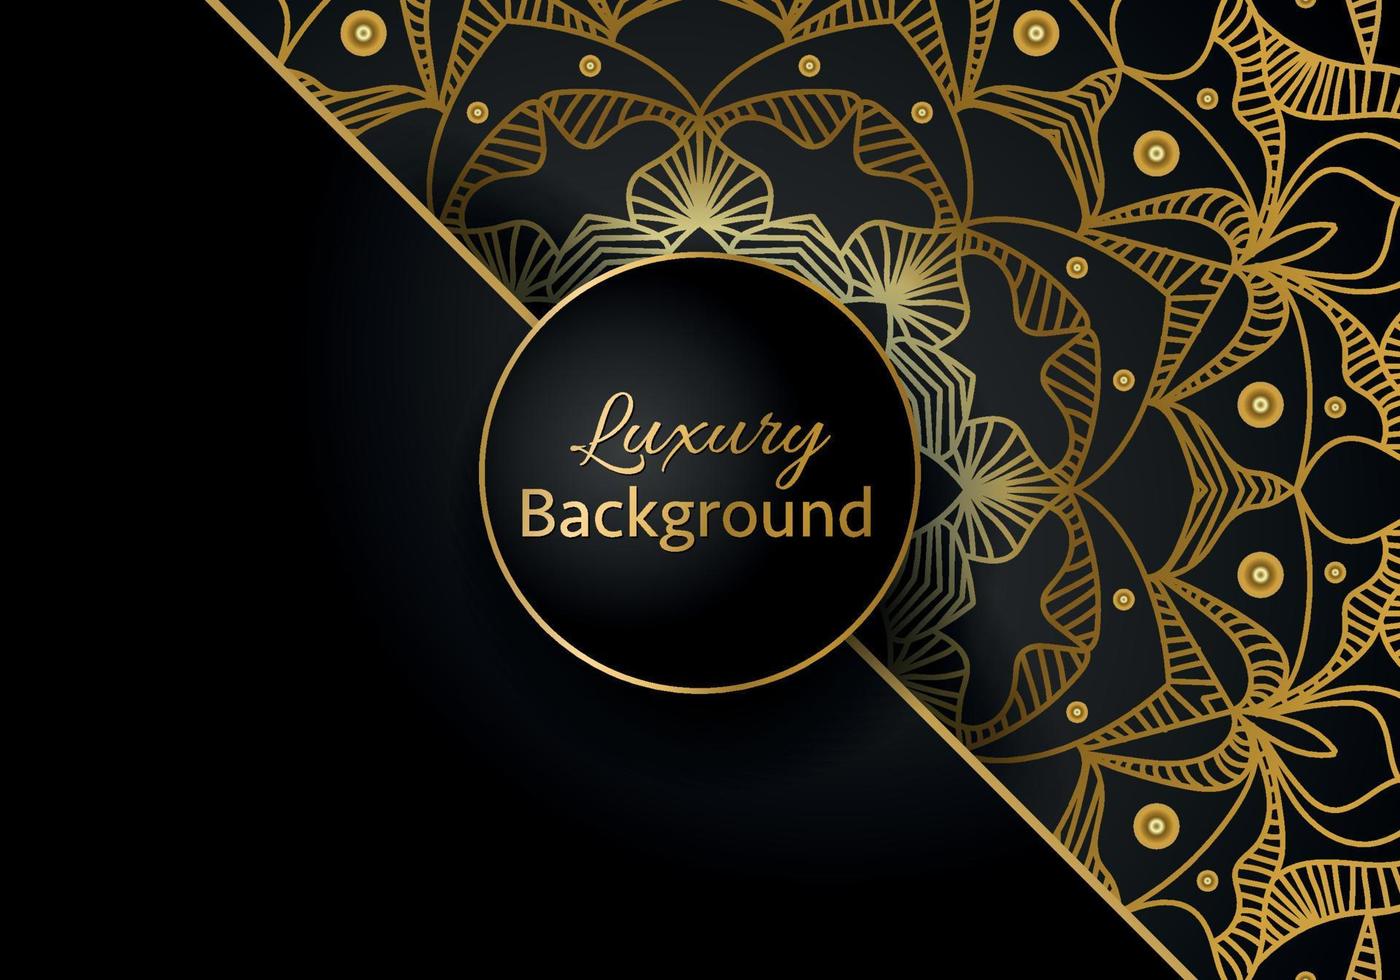 luxe sier mandala ontwerp achtergrond in gouden kleur vector